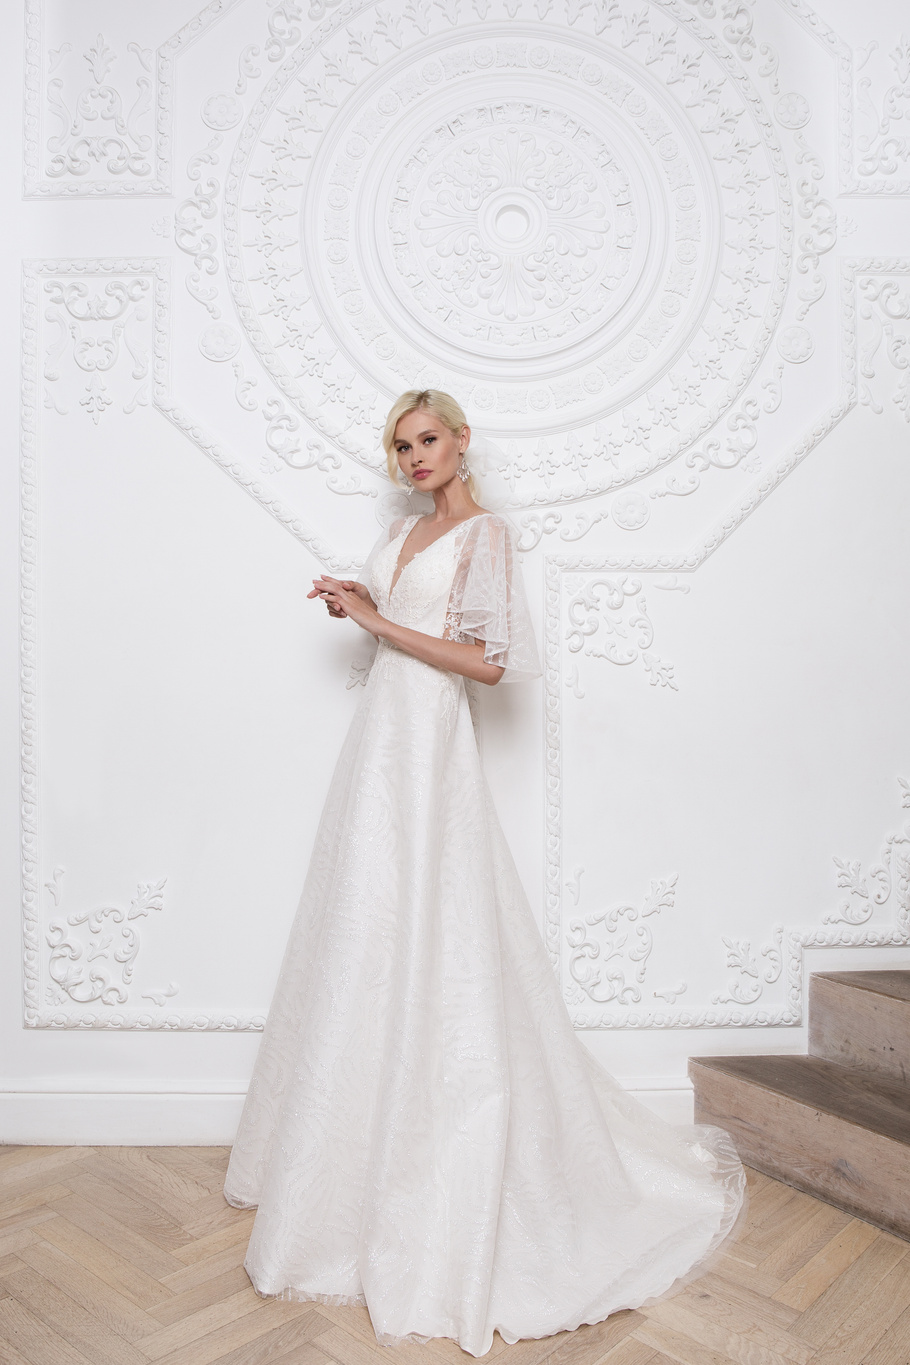 Купить свадебное платье «Клэр» Мэрри Марк из коллекции 2020 года в Воронеже